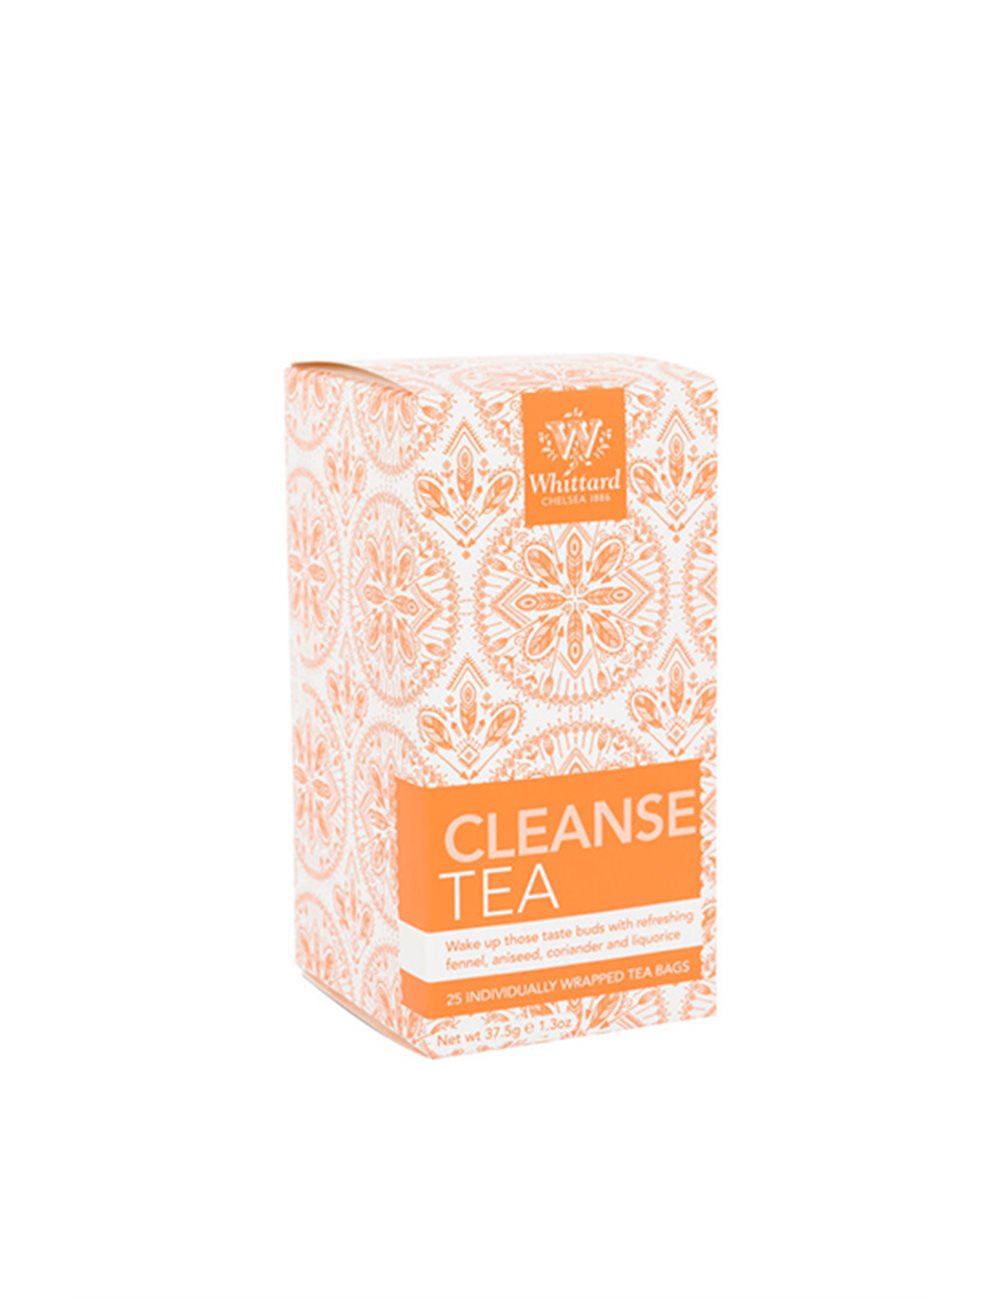 Cleanse Tea